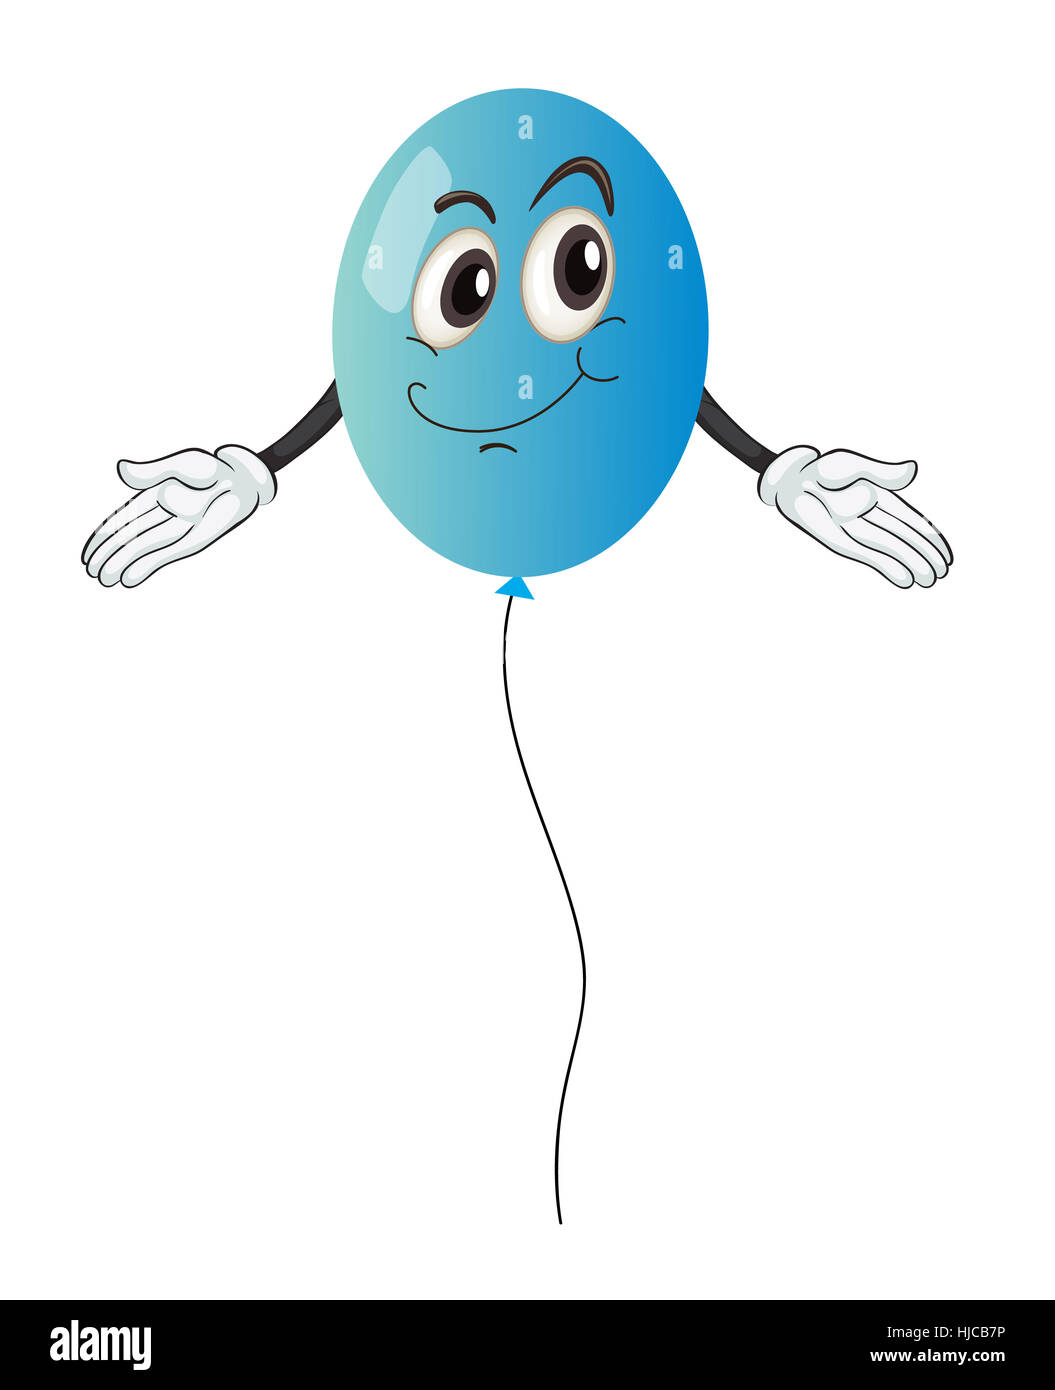 Illustration détaillée d'un ballon bleu sur fond blanc Photo Stock - Alamy